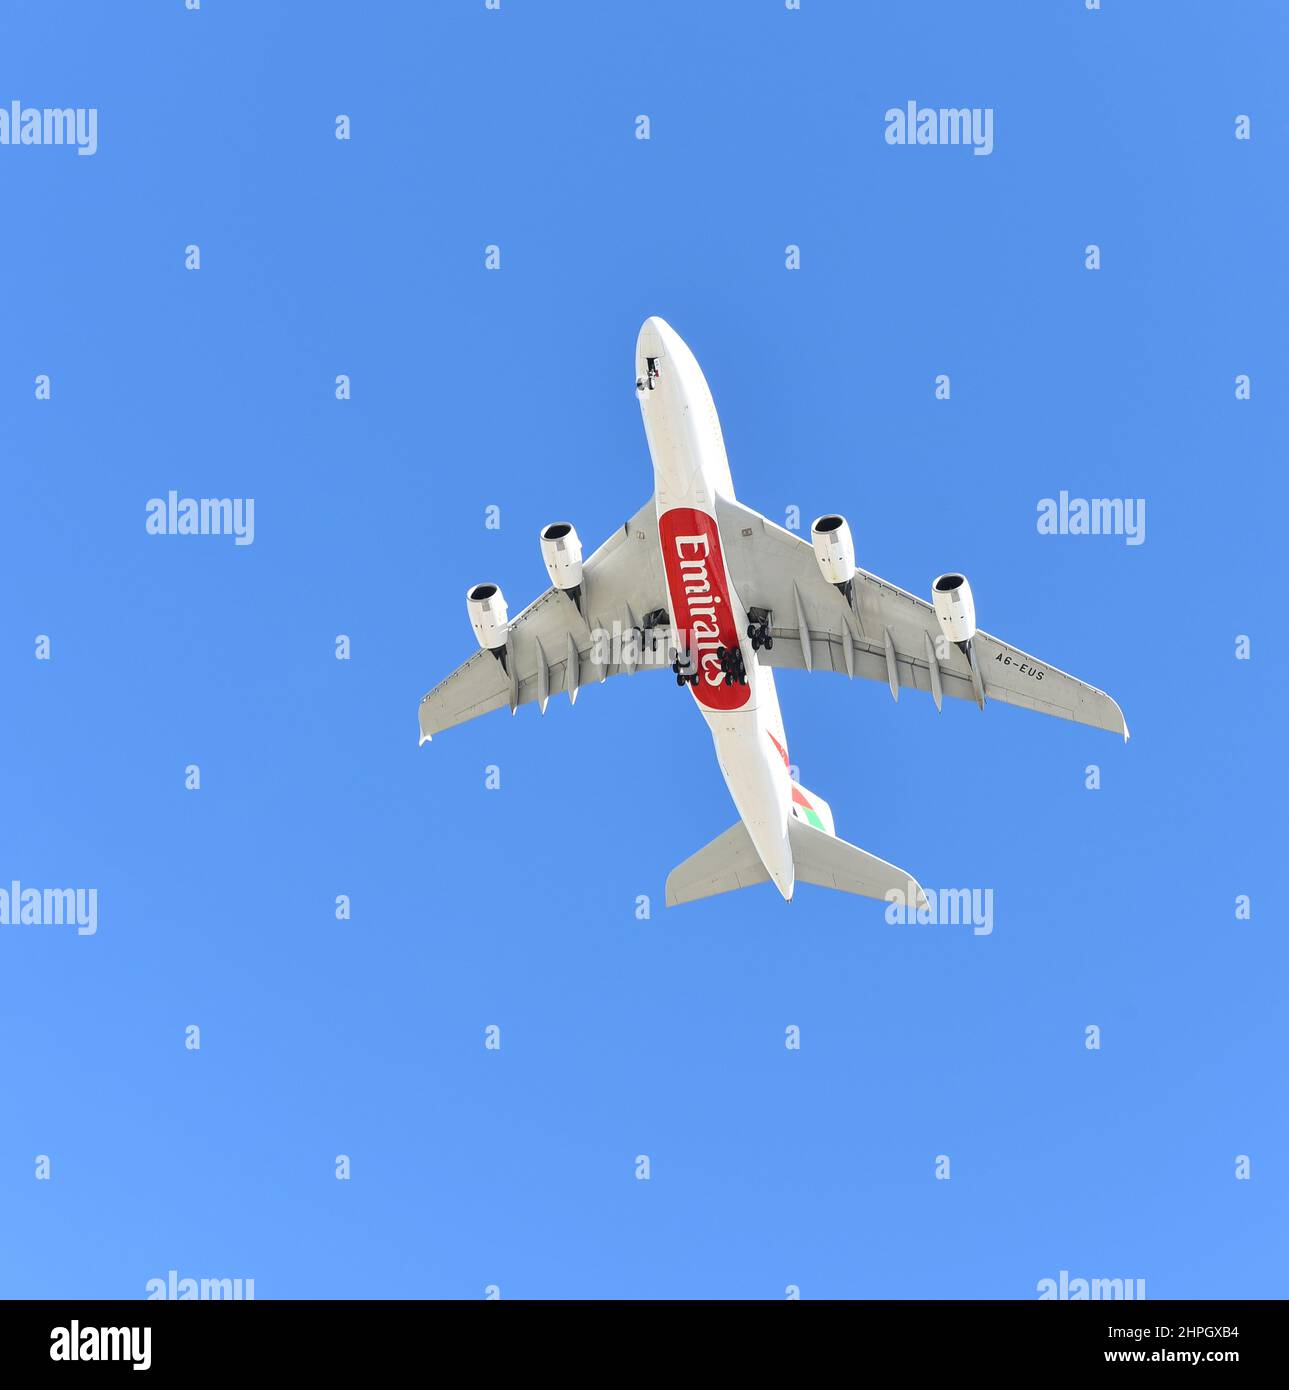 INGLEWOOD, KALIFORNIEN - 12. FEB 2022: Ein Emirates Jet Airliner fliegt über dem Himmel gegen einen blauen Himmel. Stockfoto